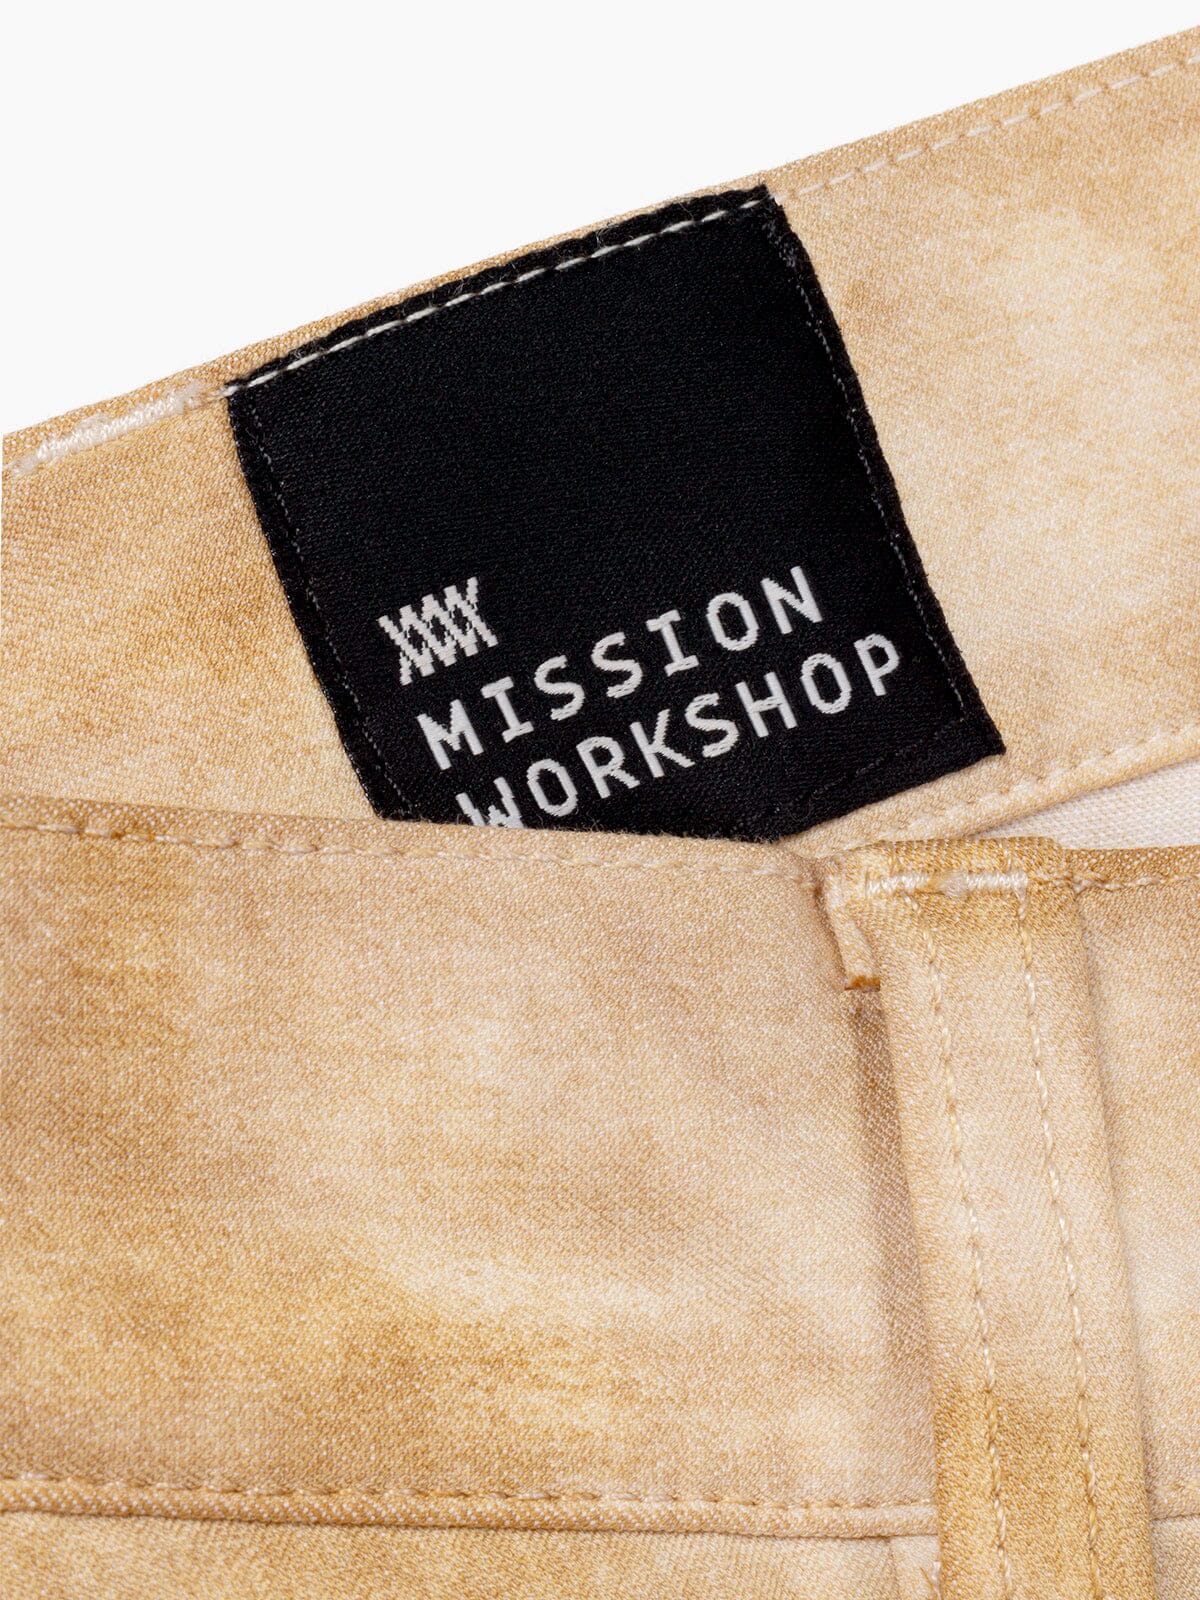 Paragon by Mission Workshop - Säänkestävät laukut ja tekniset vaatteet - San Francisco & Los Angeles - Rakennettu kestämään - ikuinen takuu